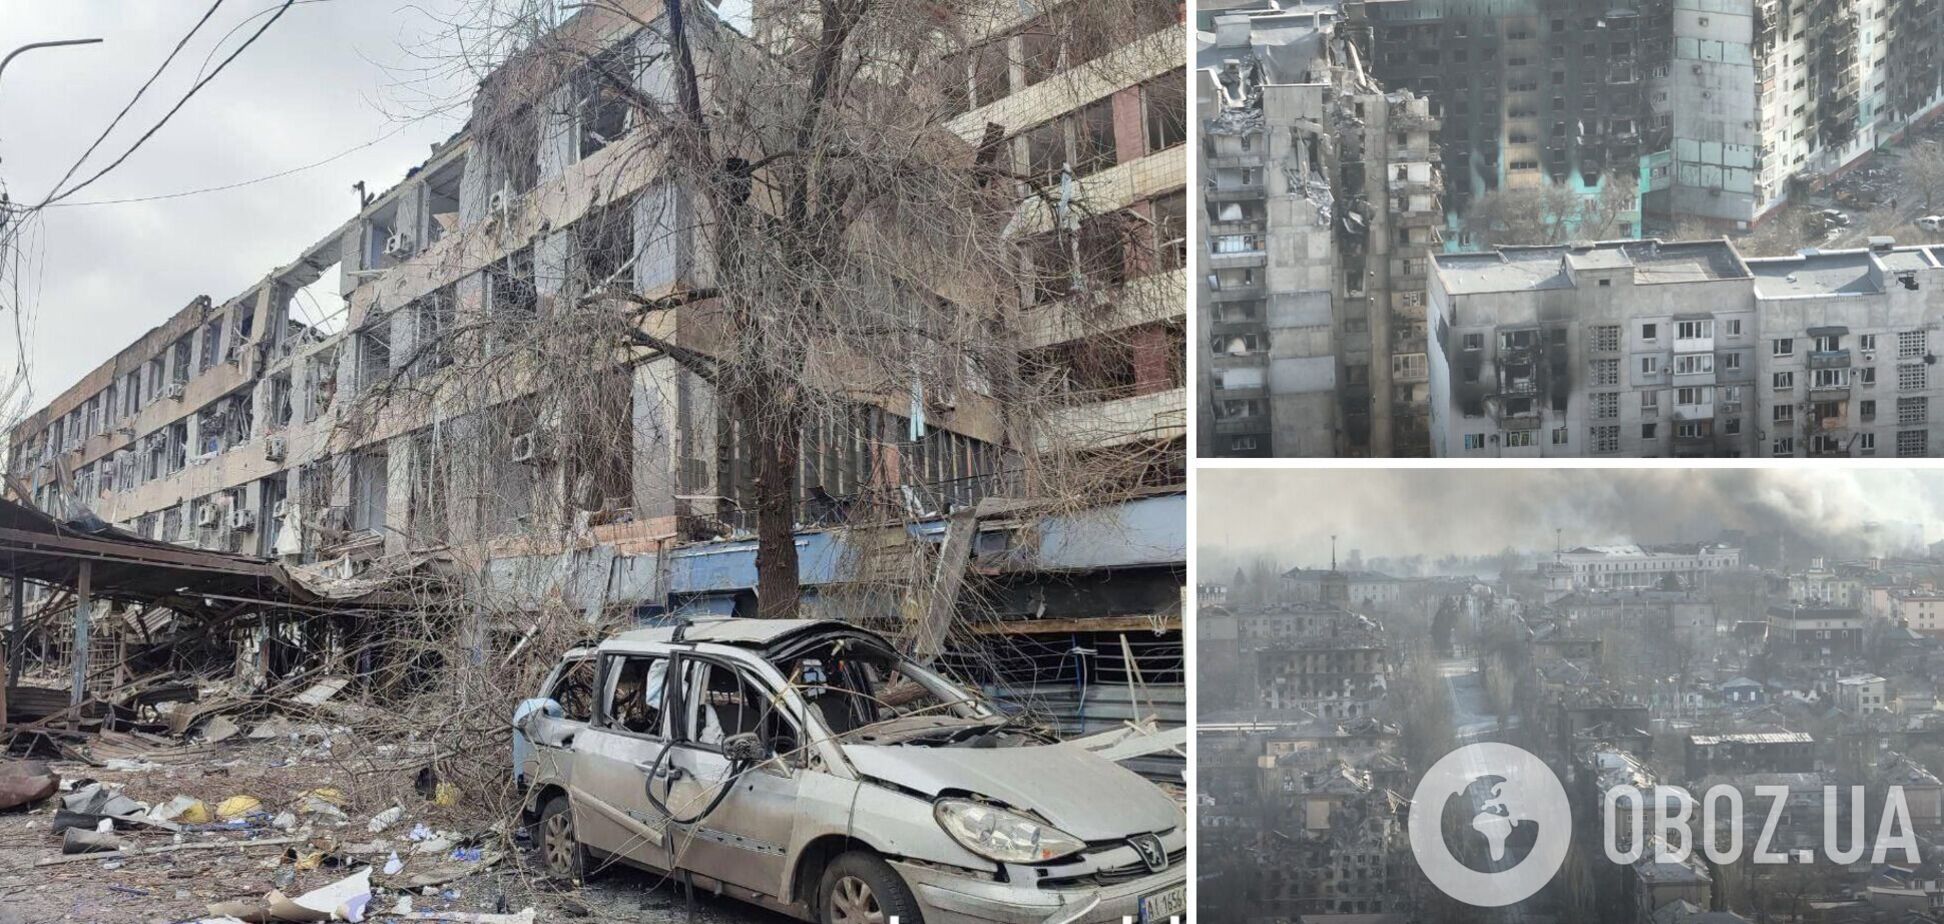 'Ми потрапили в пекло': українка розповіла, як окупанти знищували Маріуполь та влаштовували 'зачистки'